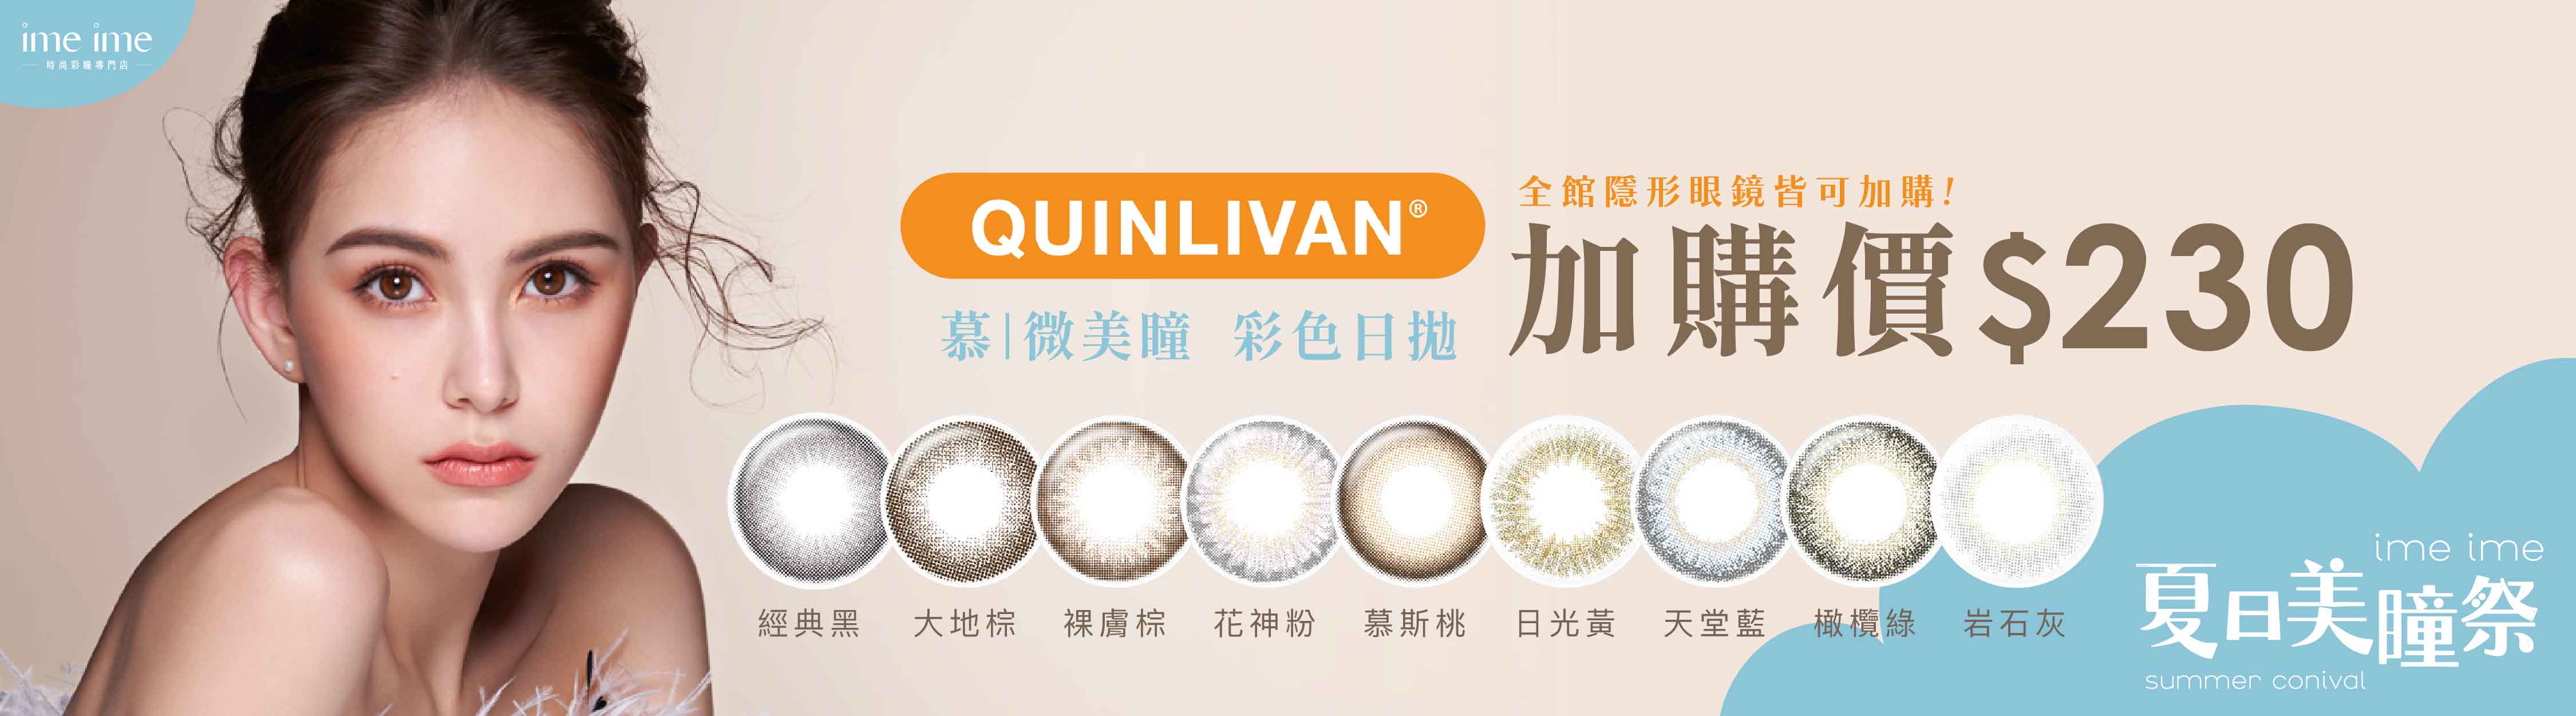 quinlivan